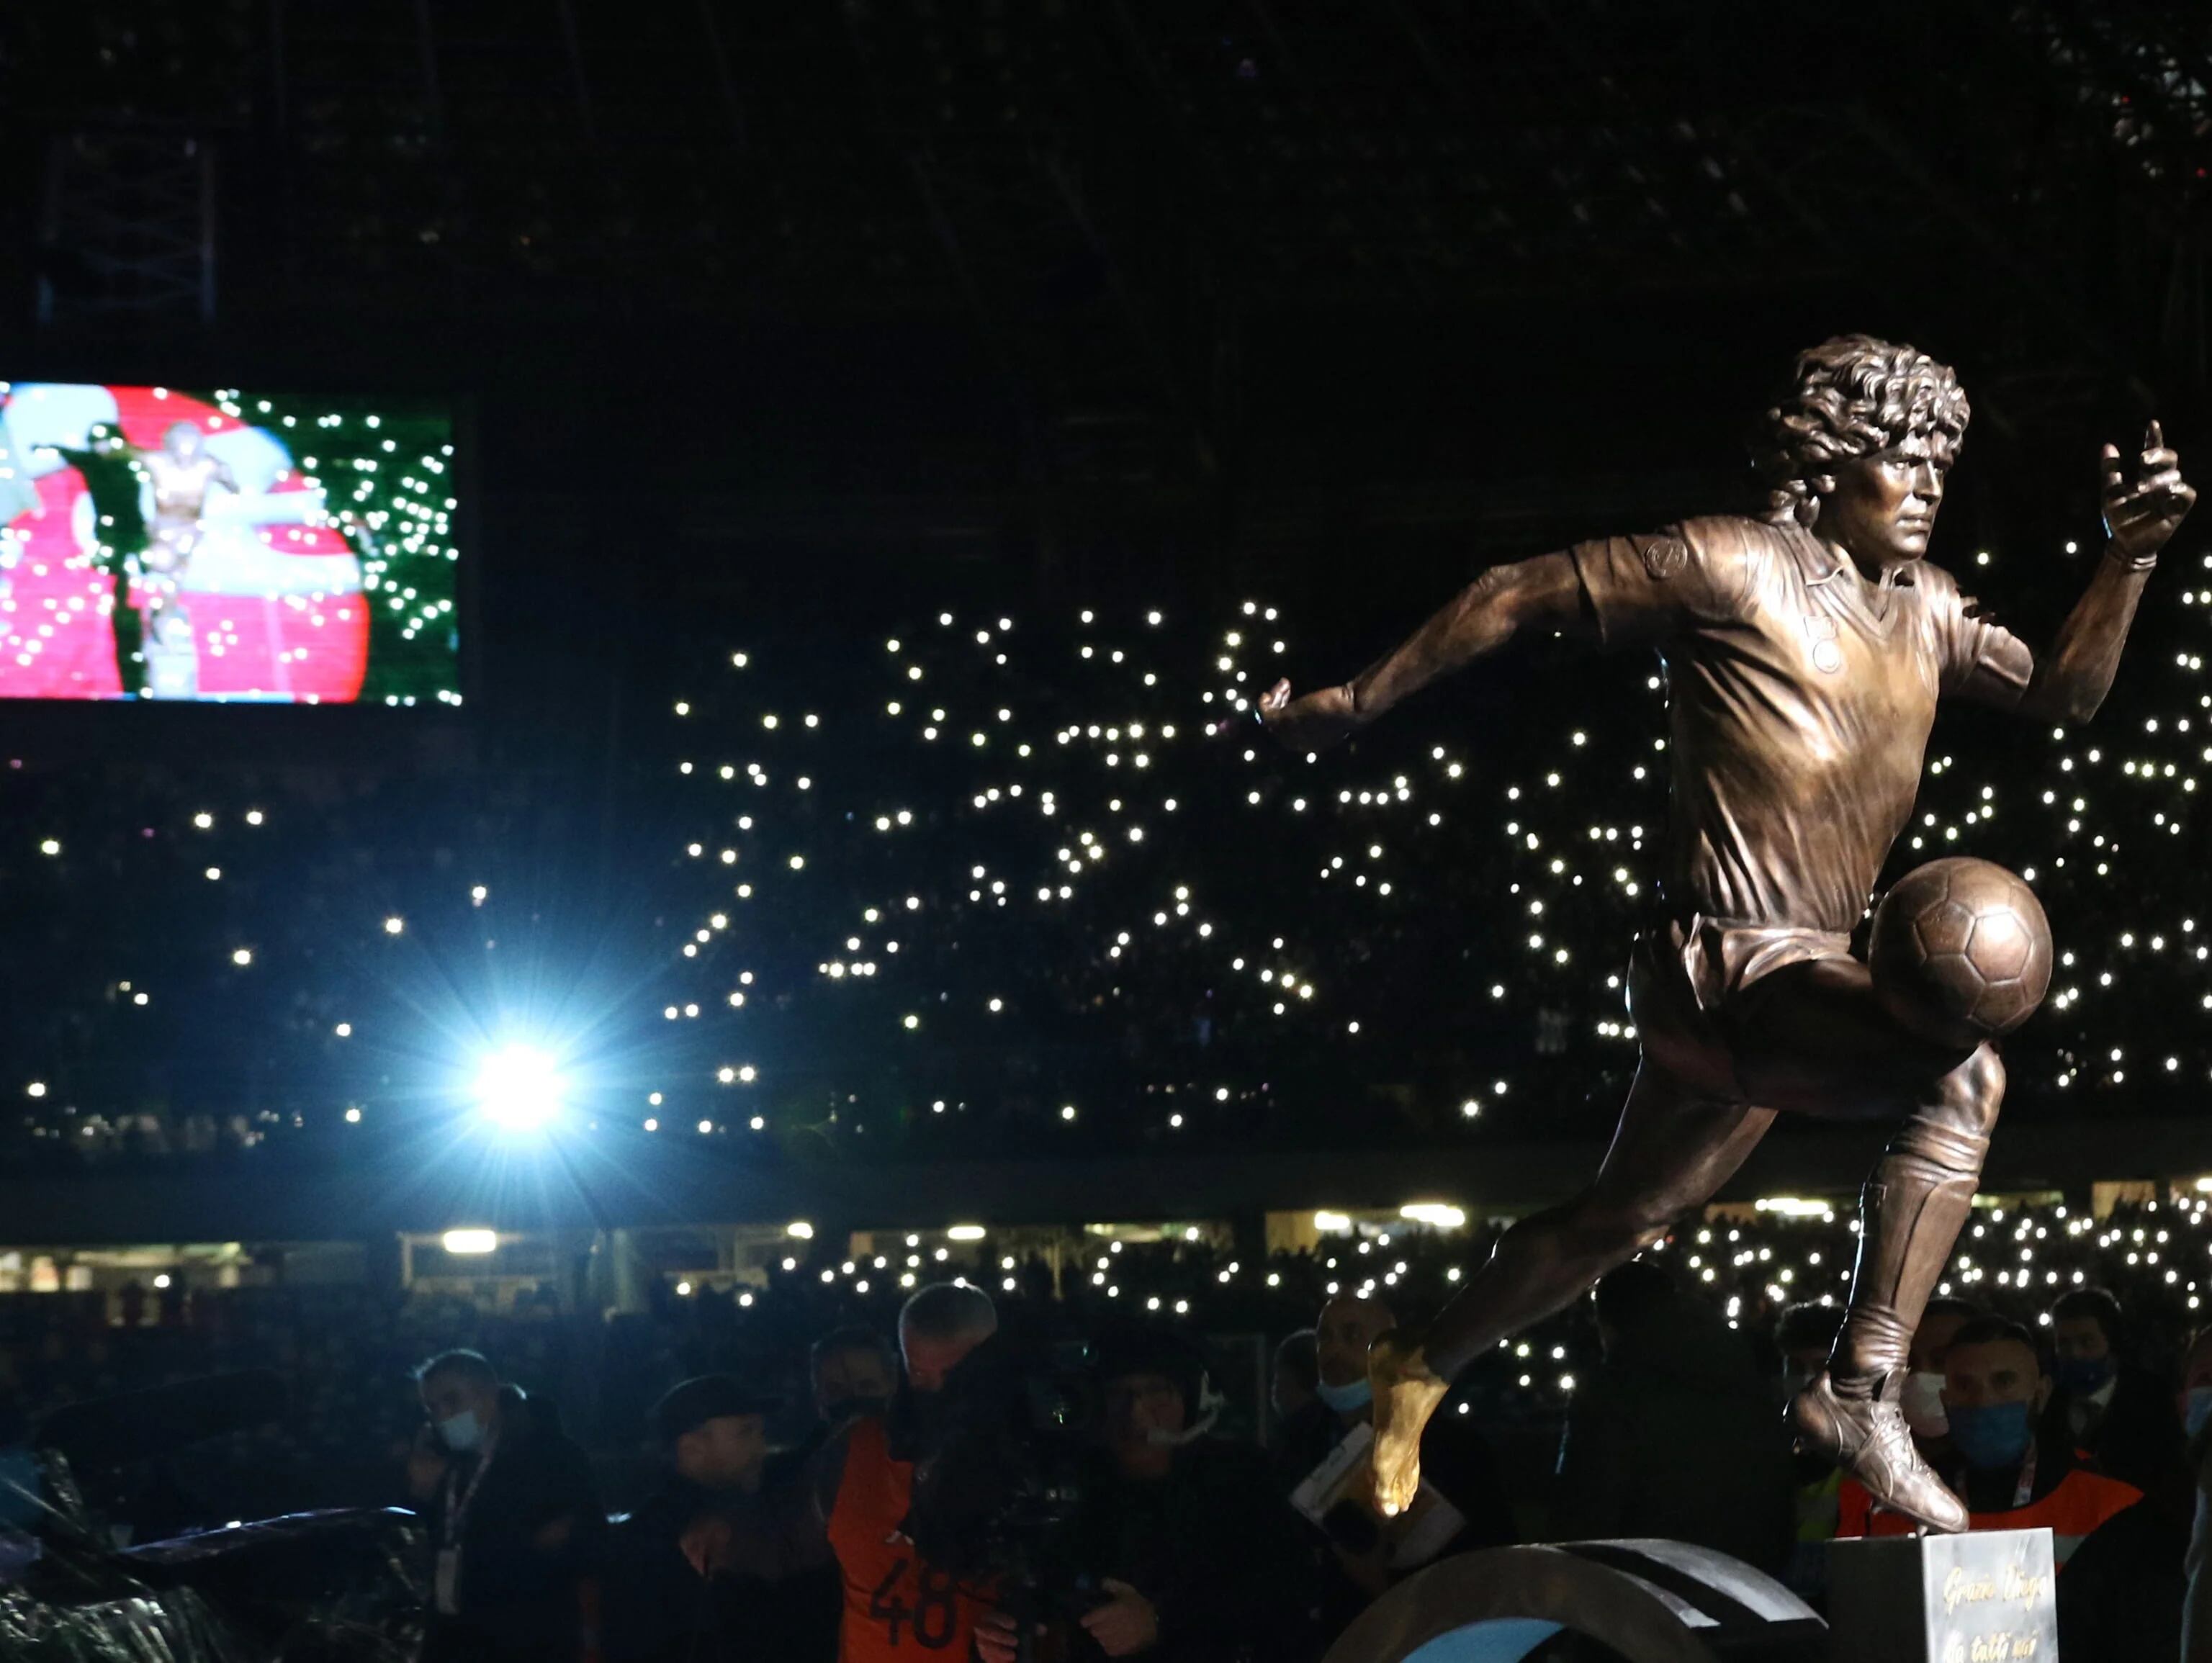 La historia desconocida detrás del “pie de oro” de Maradona en la estatua del Napoli: una idea, una “traición” y un conflicto que se mantiene latente